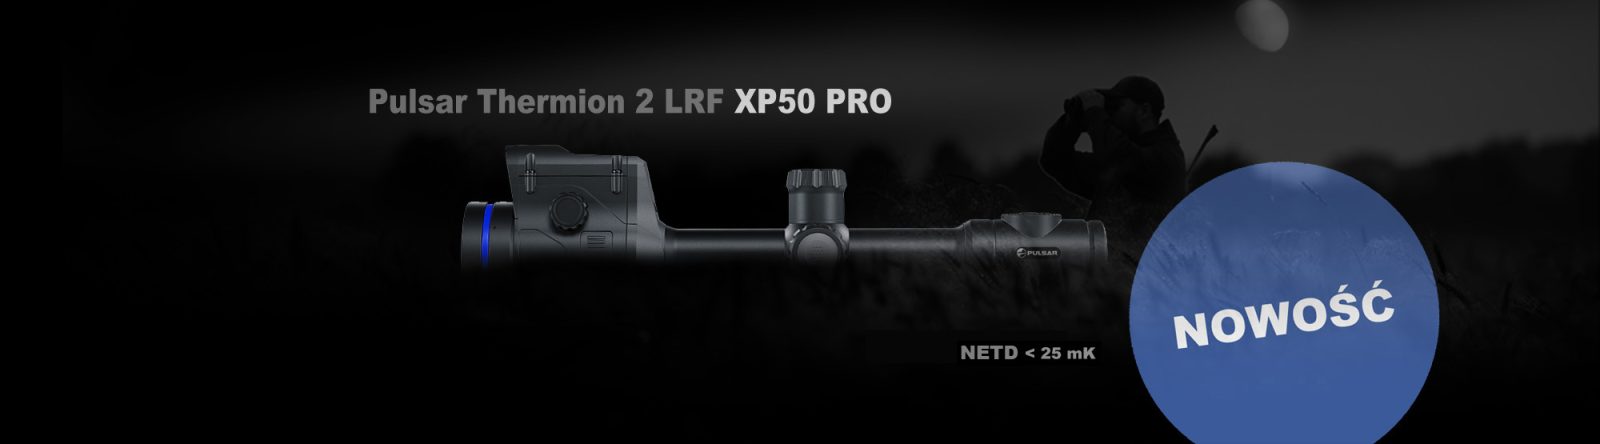 Thermion 2 LRF XP50 PRO